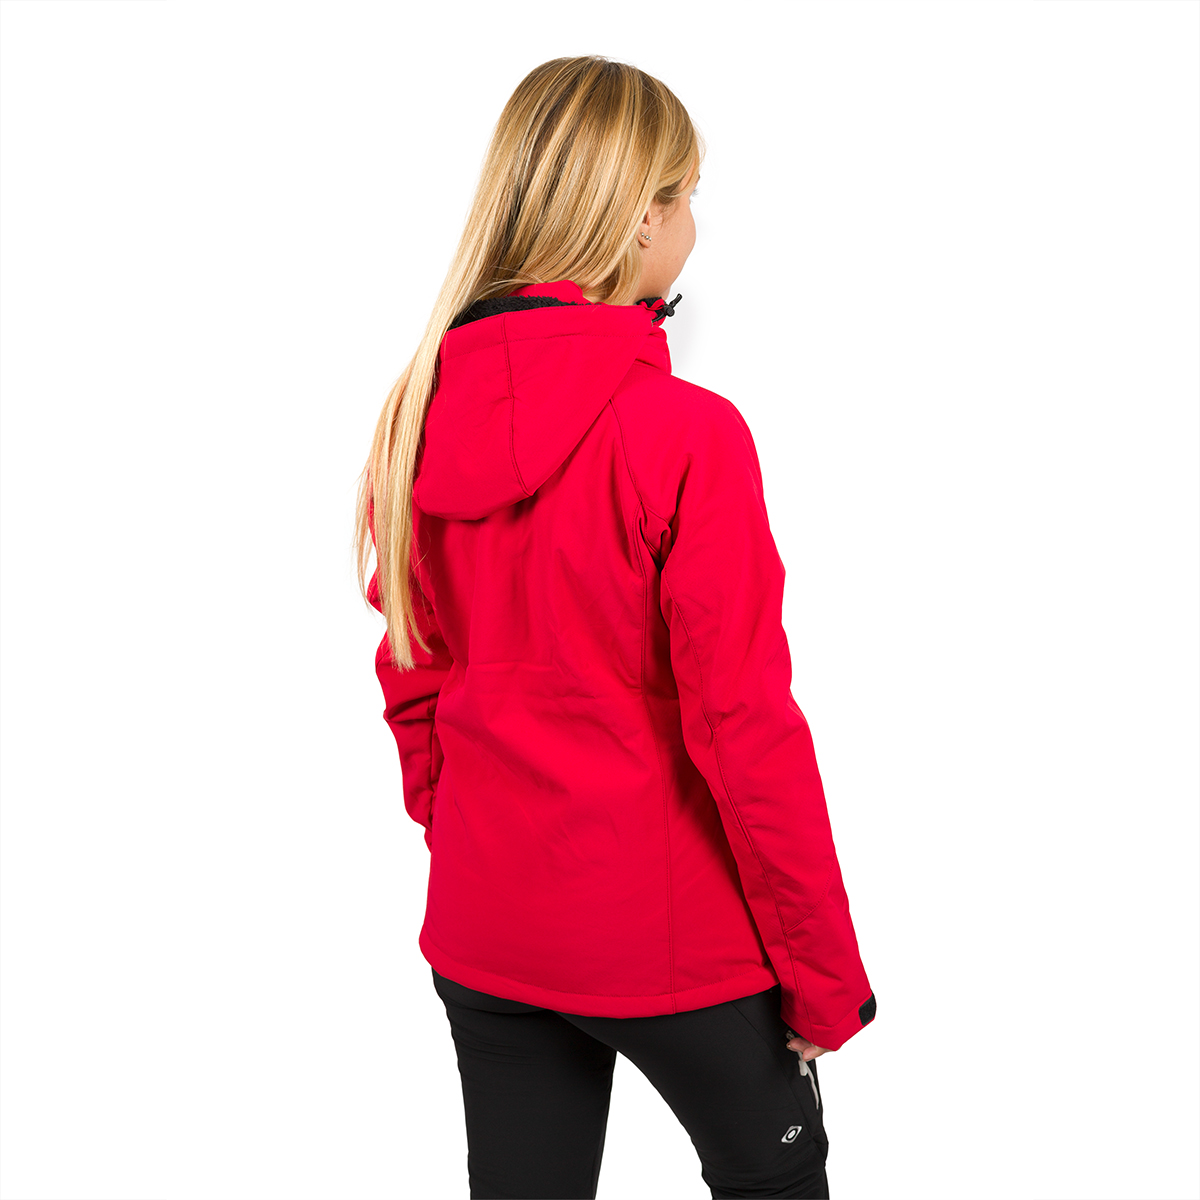 Izas Oshawa Women's Hooded Softshell Jacket (Large, Red/Red) - image 4 of 4